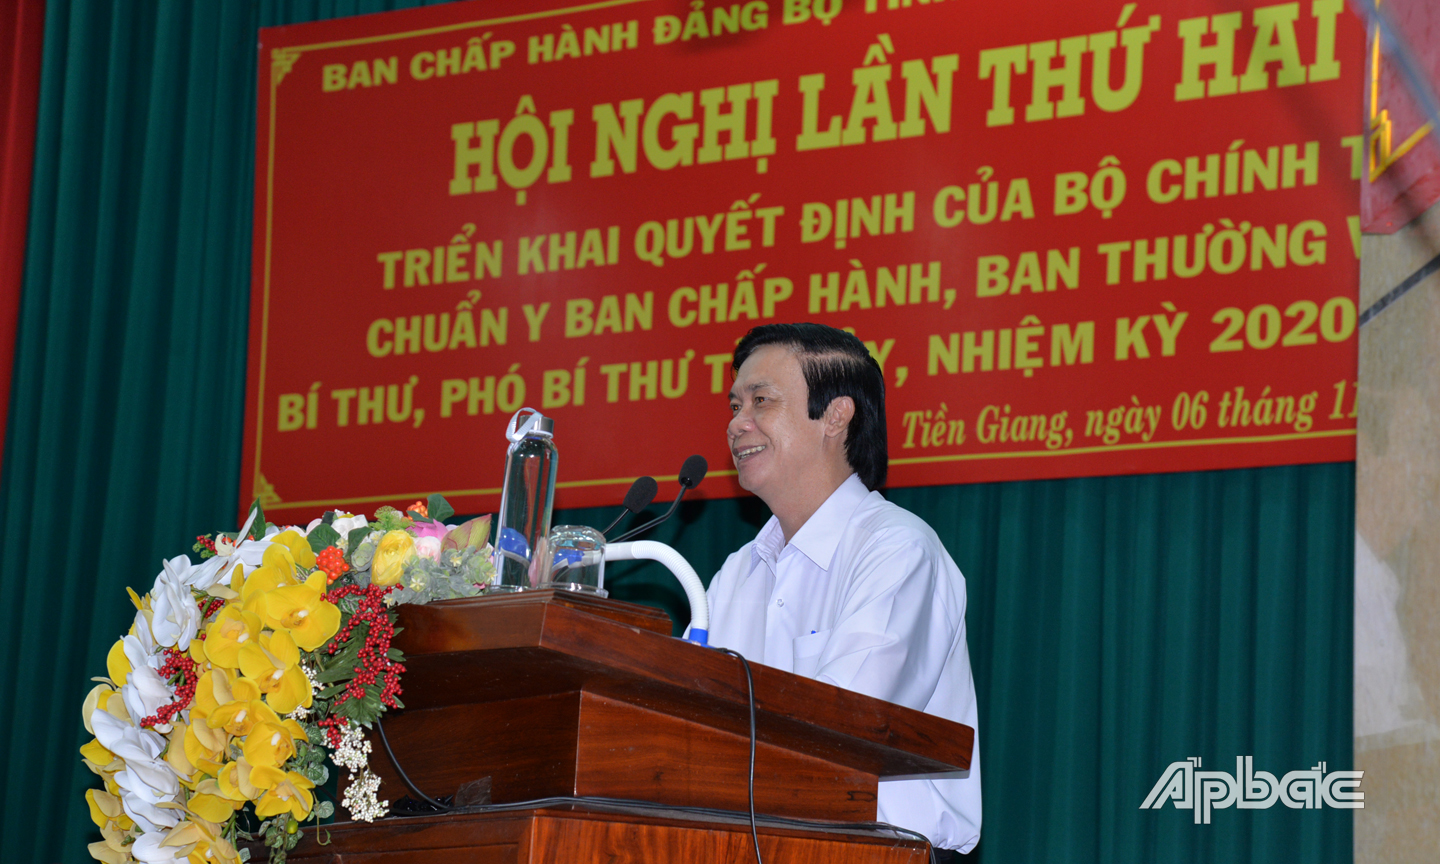 Bí thư Tỉnh ủy Nguyễn Văn Danh, lưu ý Ban Thường vụ, Ban chấp hành Đảng bộ tỉnh khóa XI phải thể hiện quyết tâm cao trong việc thực hiện nhiệm vụ.